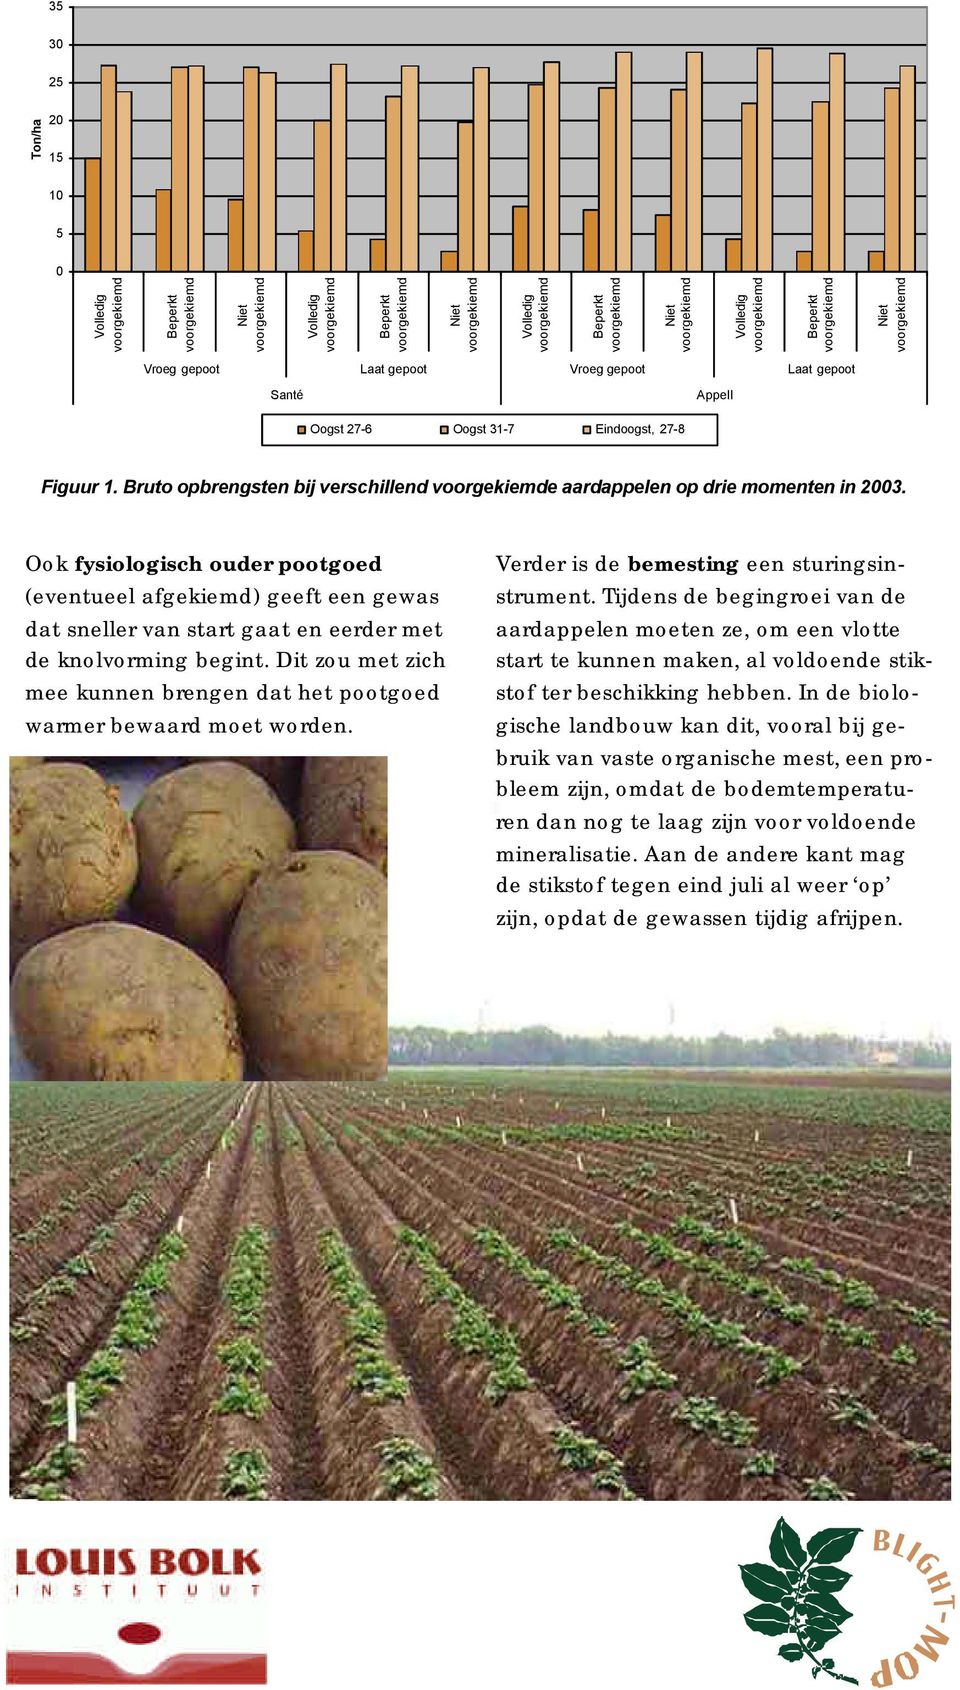 Bruto opbrengsten bij verschillend voorgekiemde aardappelen op drie momenten in 2003.